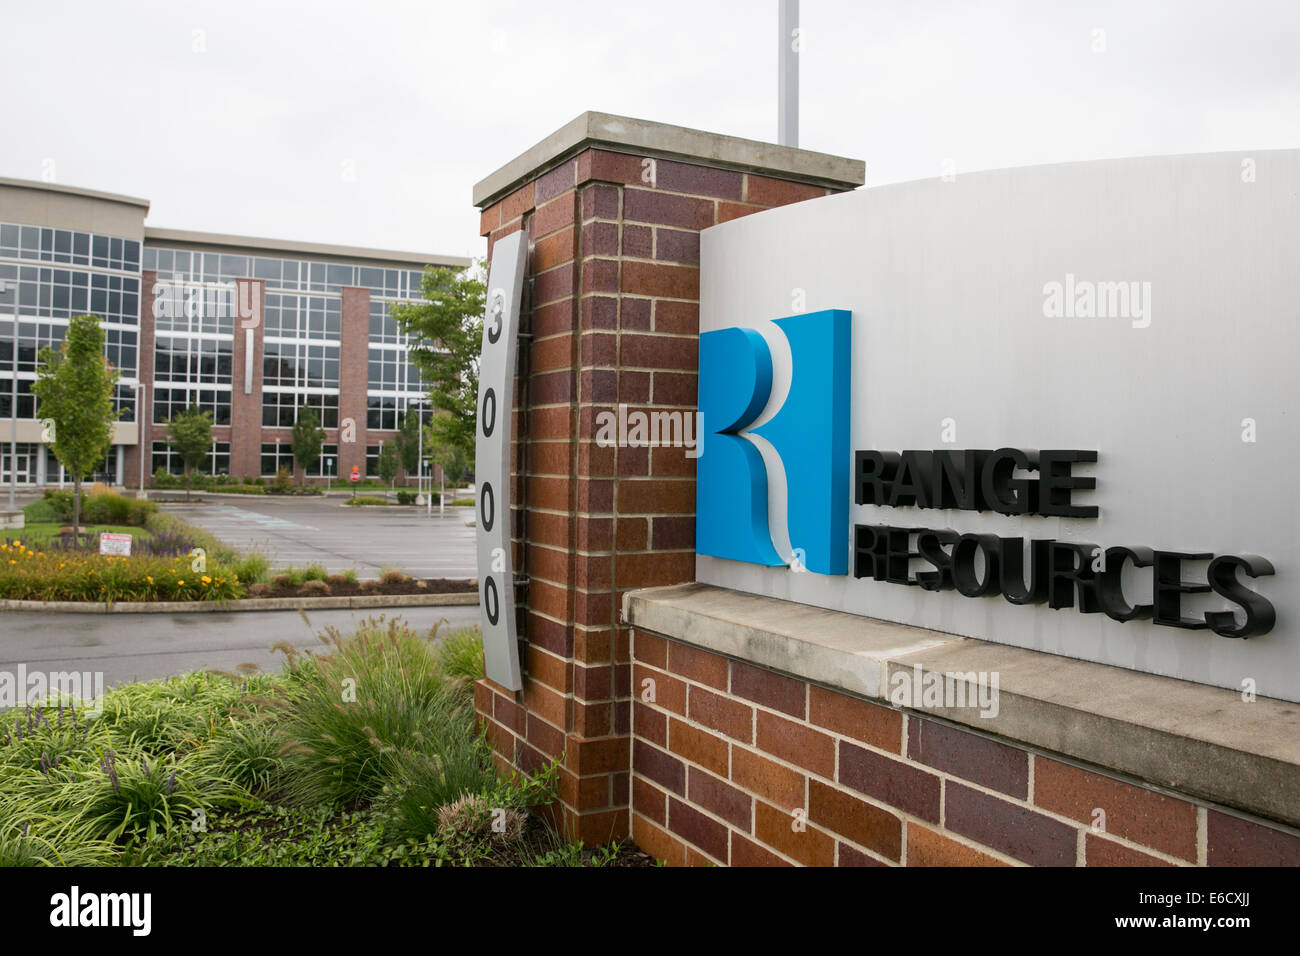 Un edificio di uffici occupati dalla gamma Resources Corporation in Canonsburg, Pennsylvania. Foto Stock